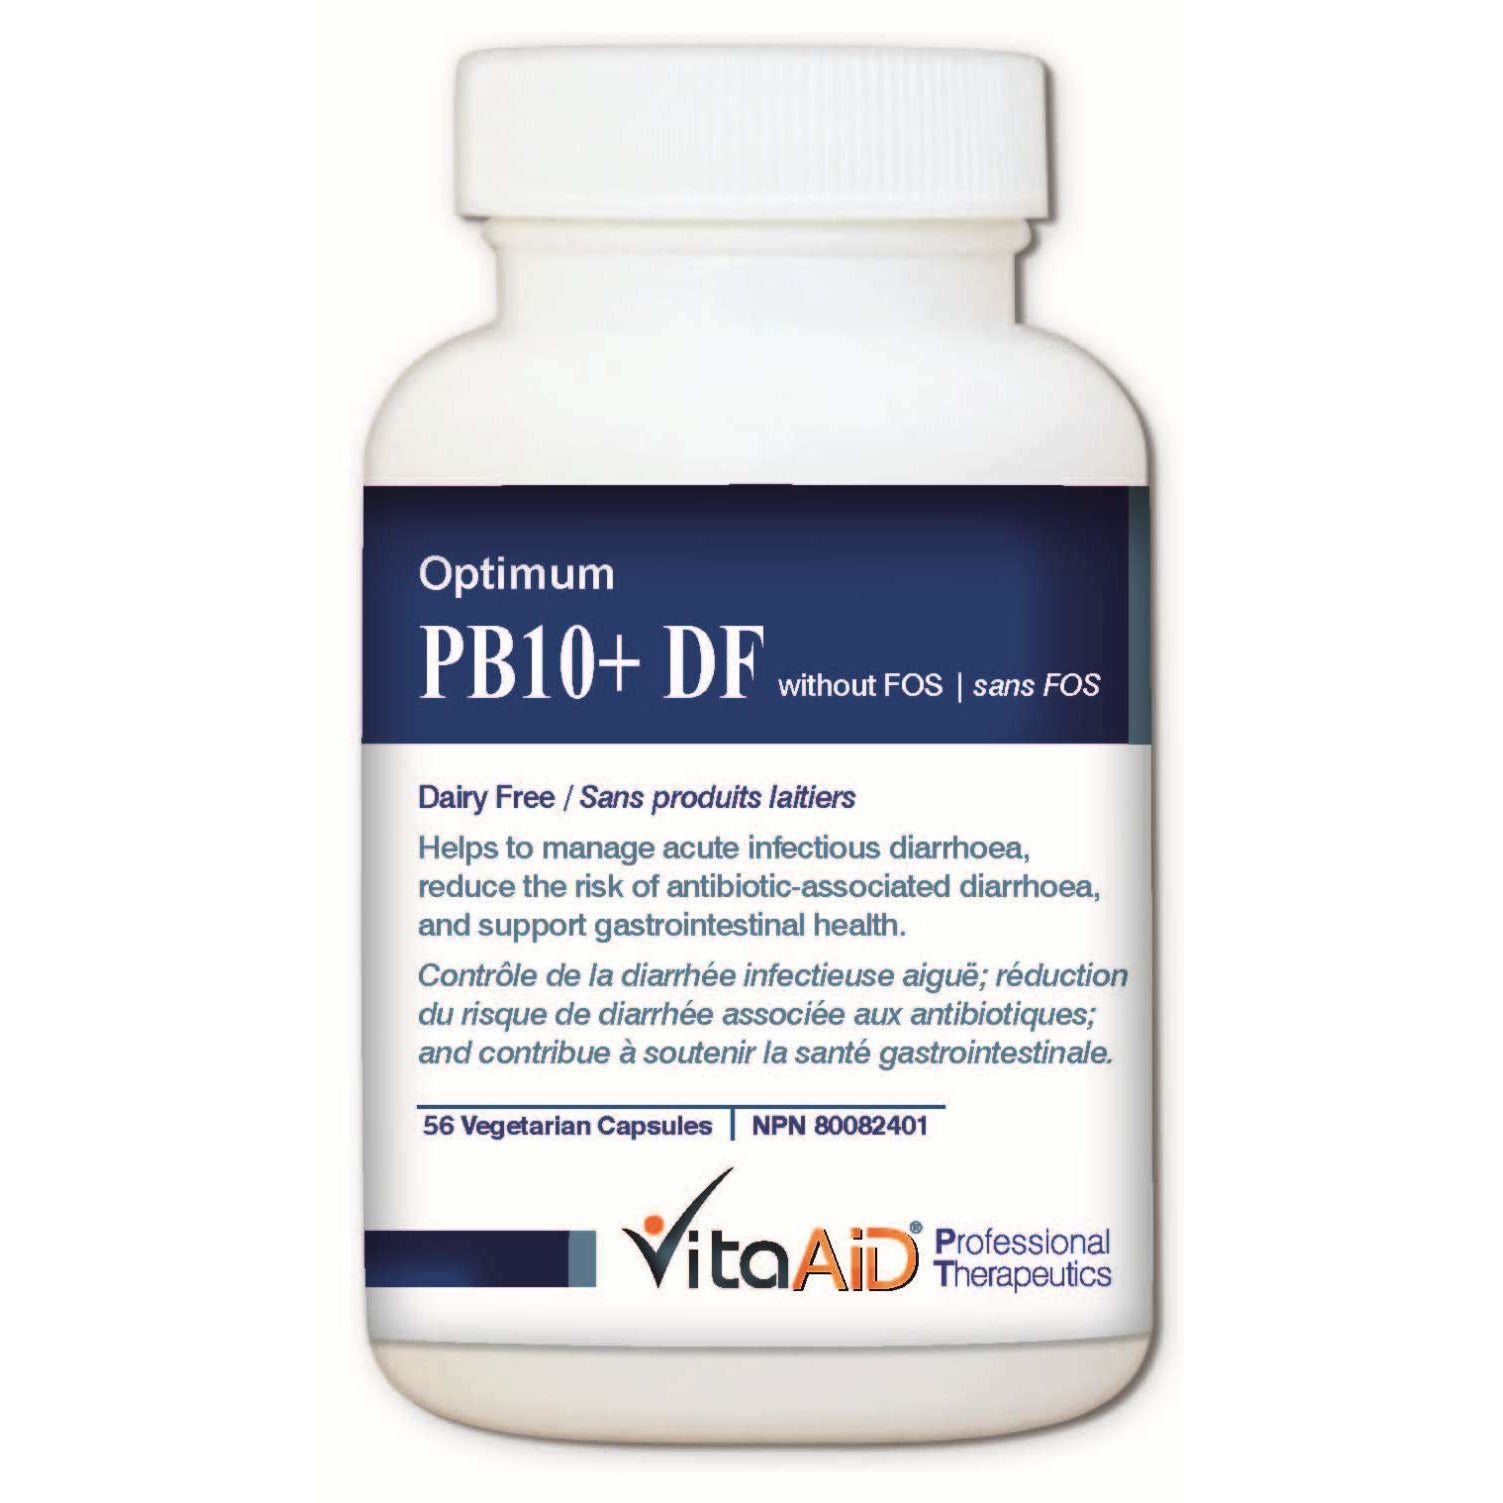 Optimum-PB10 DF (without FOS) Multi-Strain/Dairy Free Probiotic Formula 56 veg caps